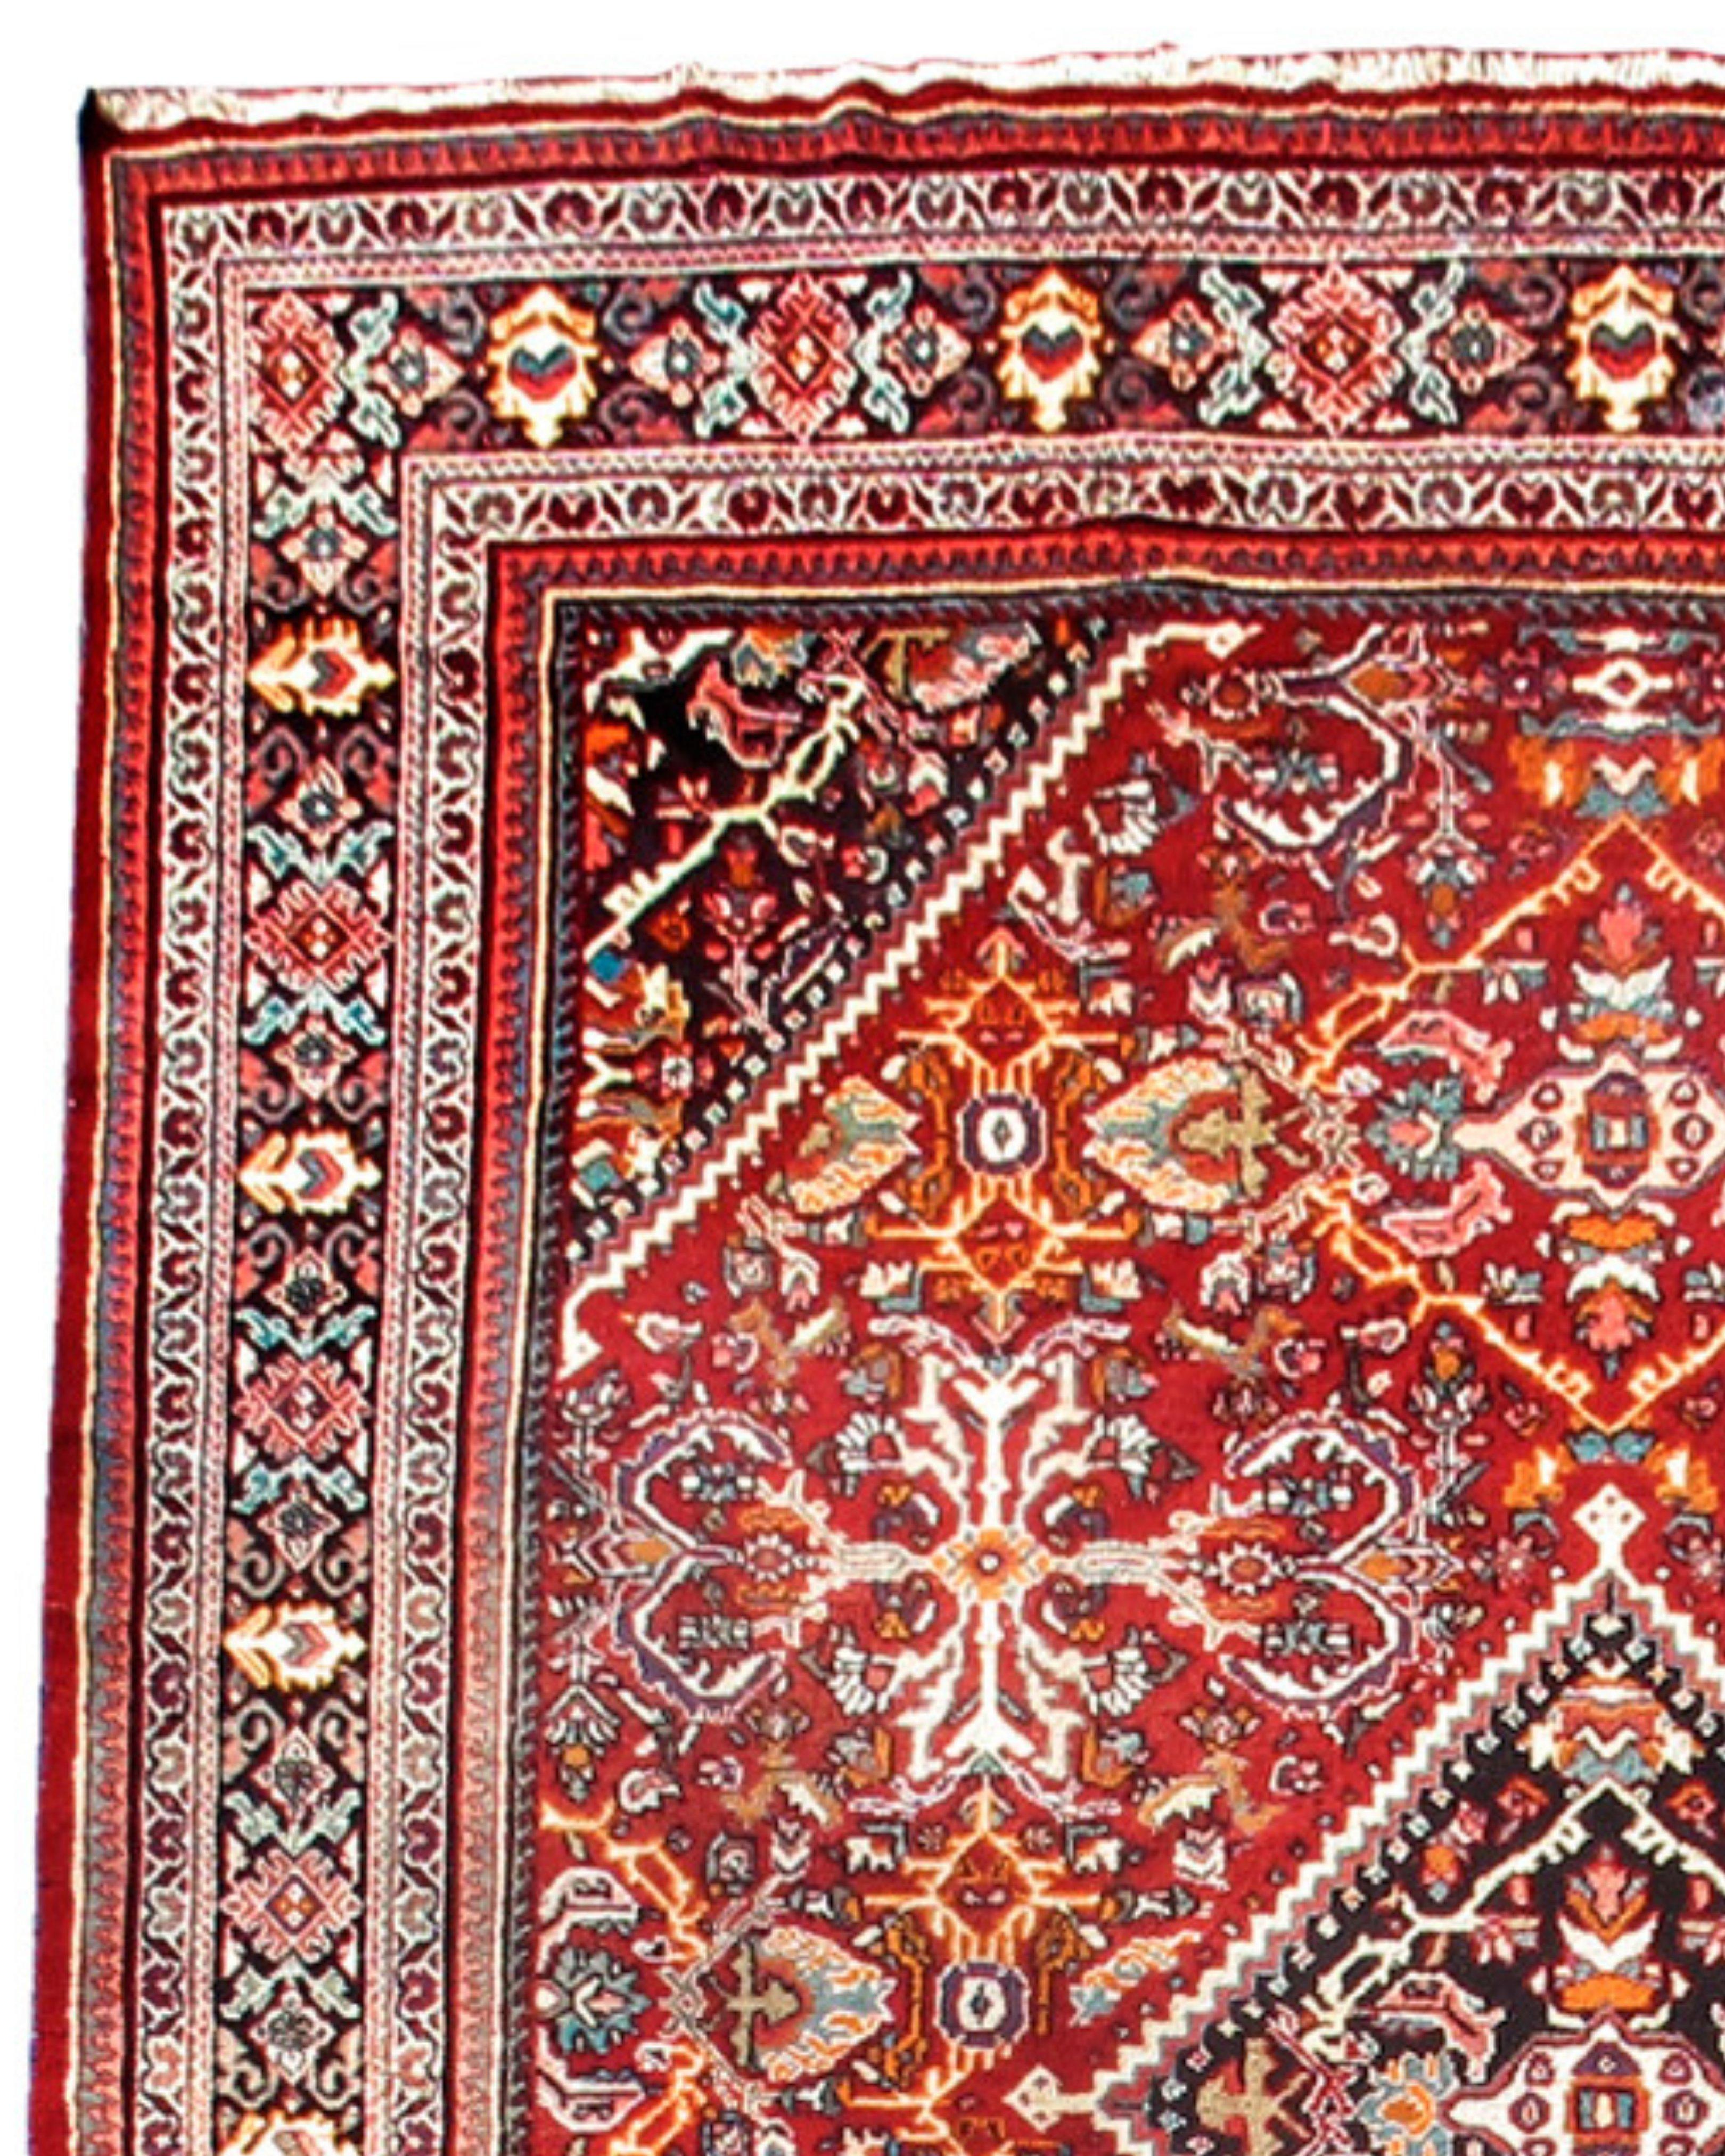 handmade persian rugs